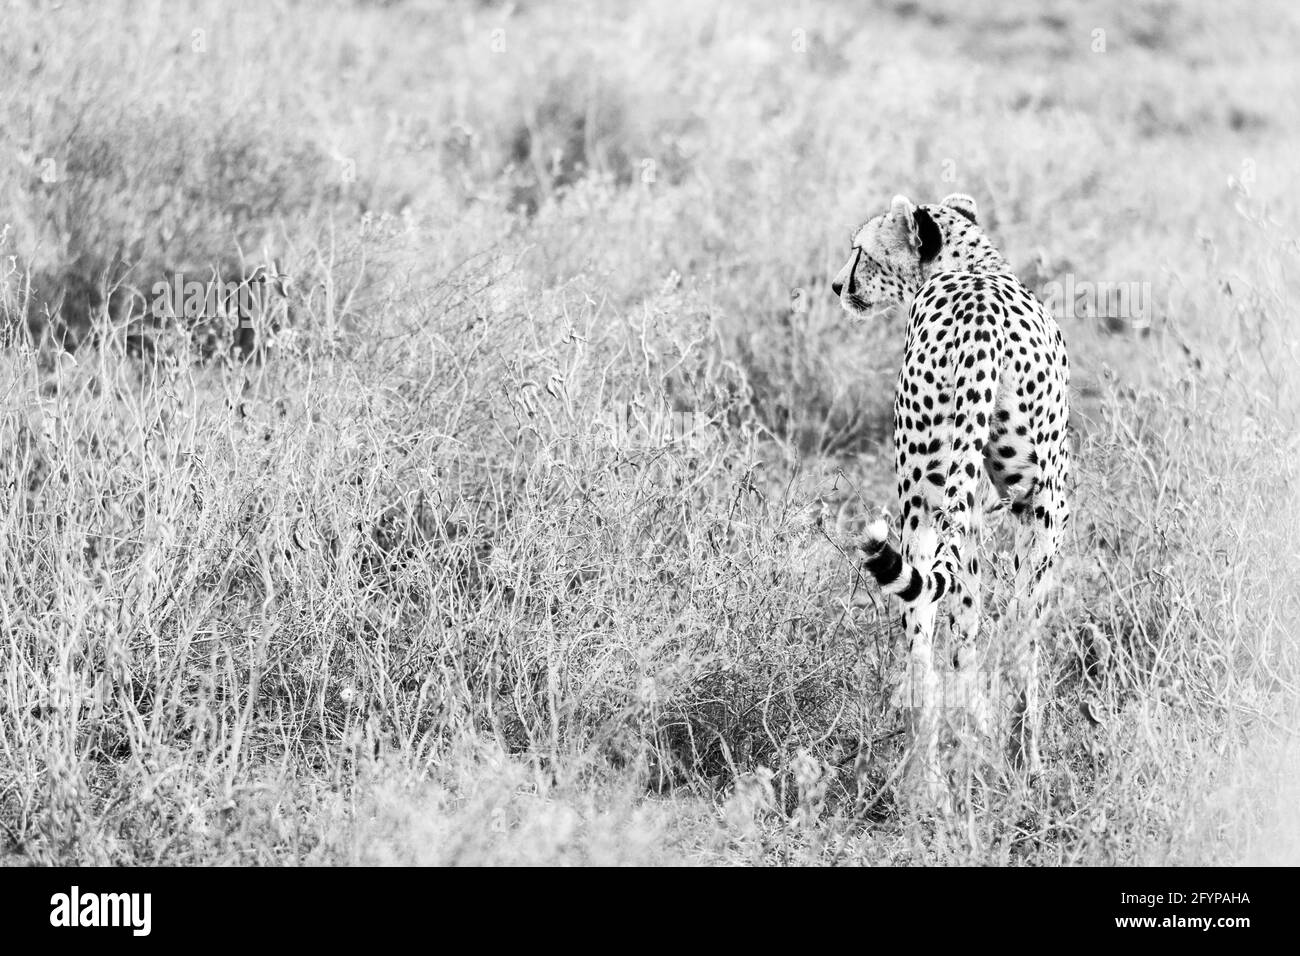 Uno degli animali più veloci del mondo, il Cheetah. Un maschio Cheetah godendo il suo tempo al sole e passeggiando attraverso l'erba selvaggia e lunga. Foto Stock